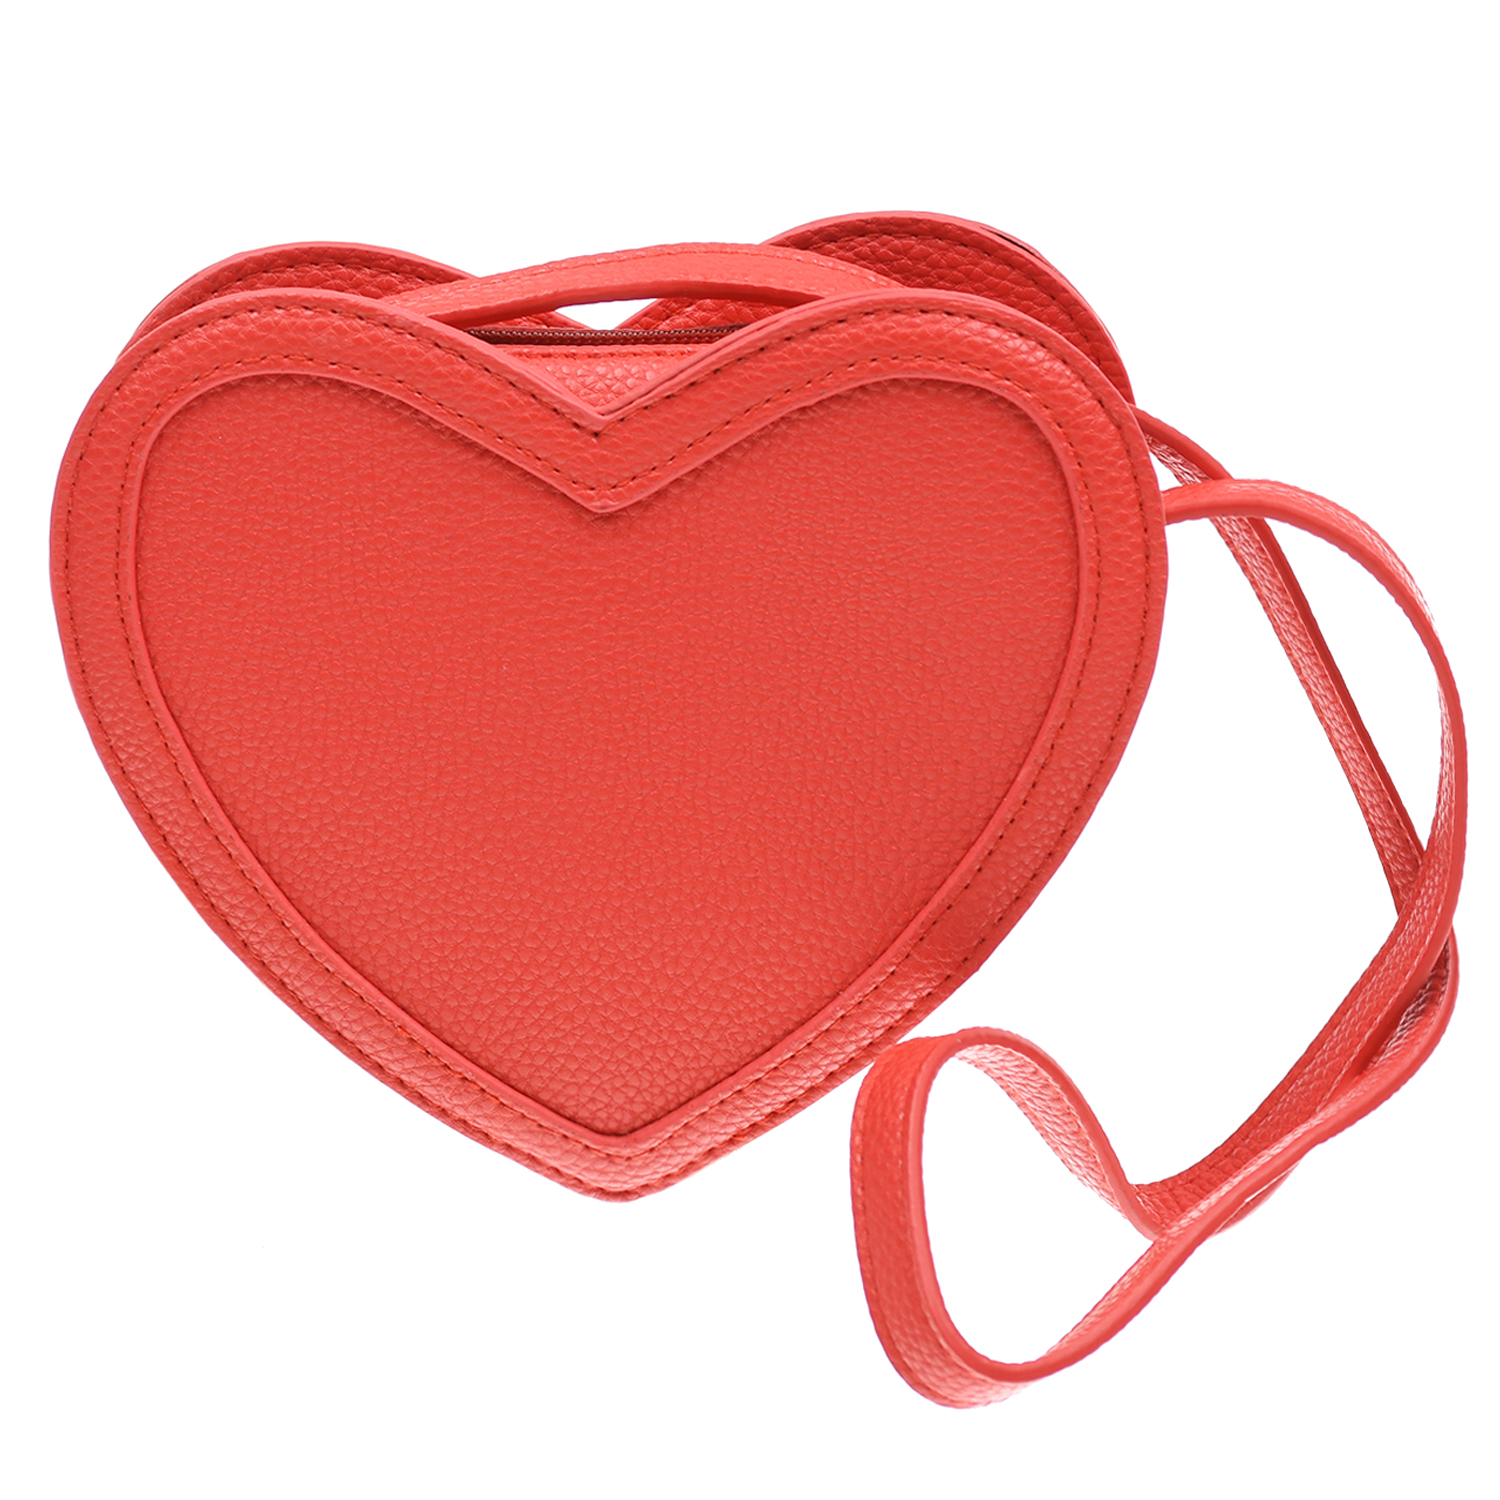 Красная сумка в форме сердца,14x18x4,5 см Molo детская, размер unica, цвет красный - фото 1